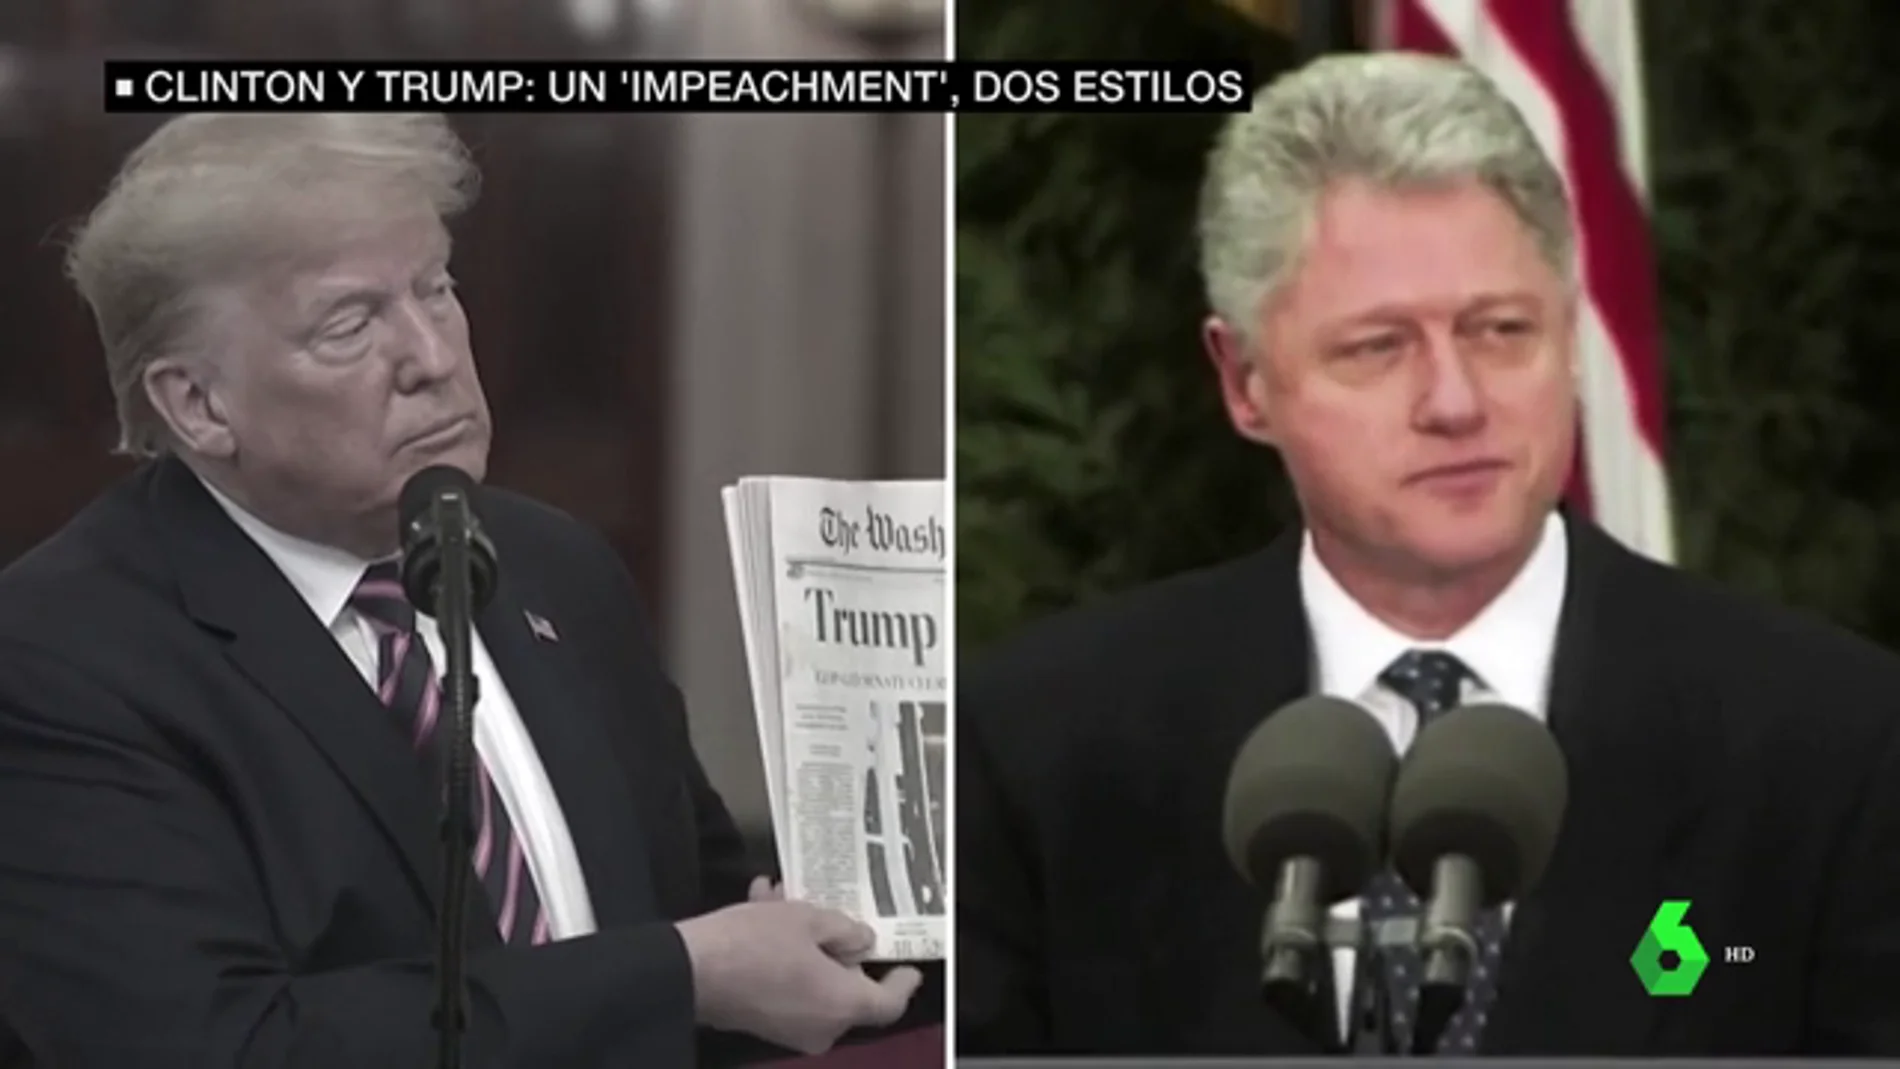 Clinton y Trump: dos formas opuestas de entender la absolución en el 'impeachment'